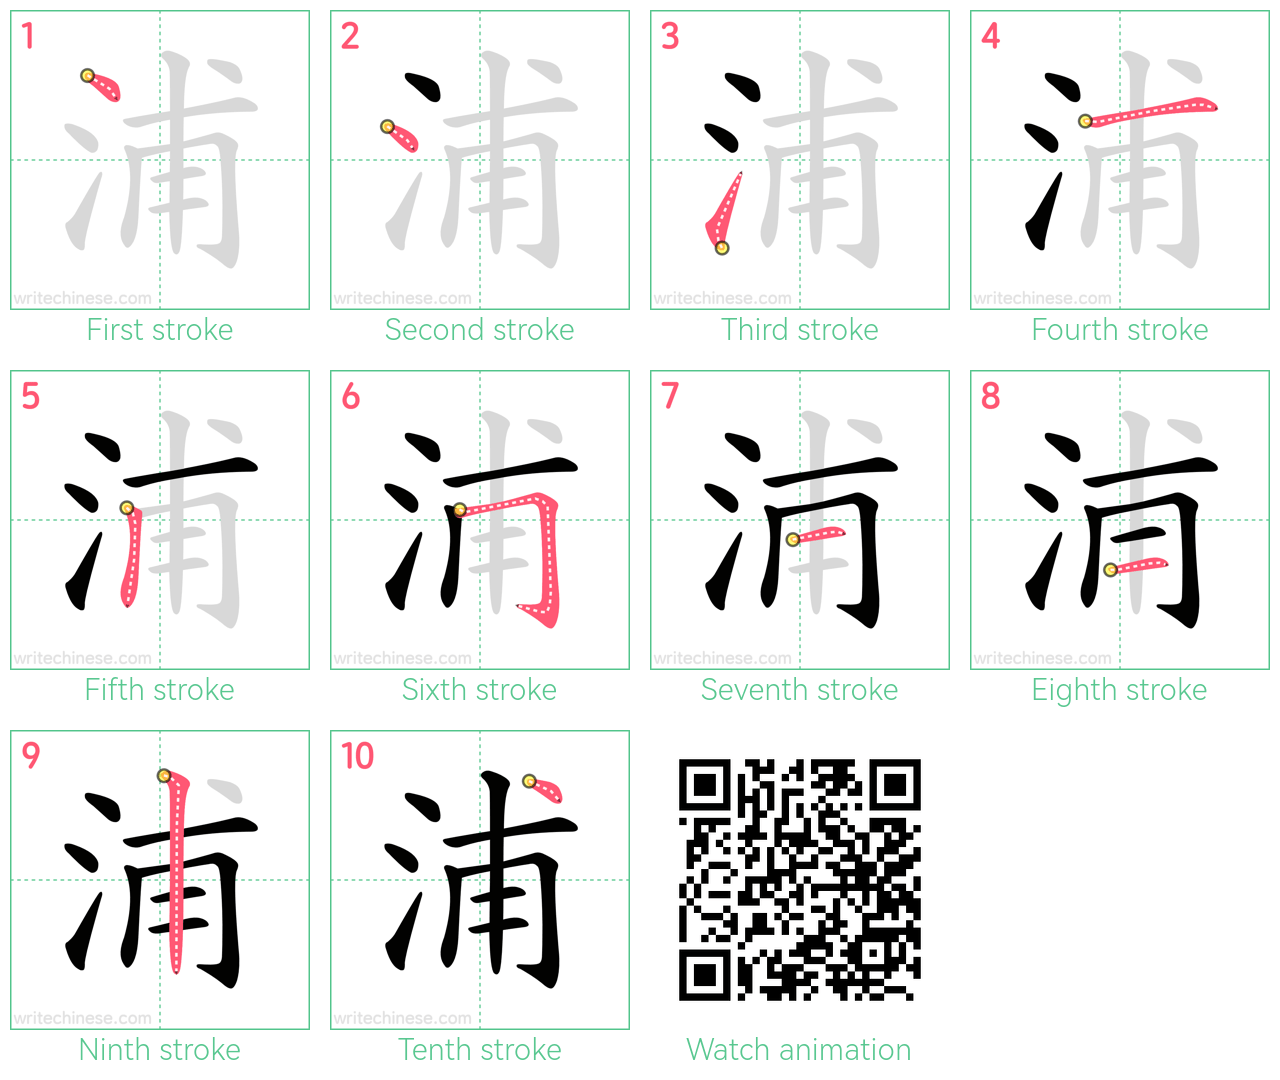 浦 step-by-step stroke order diagrams